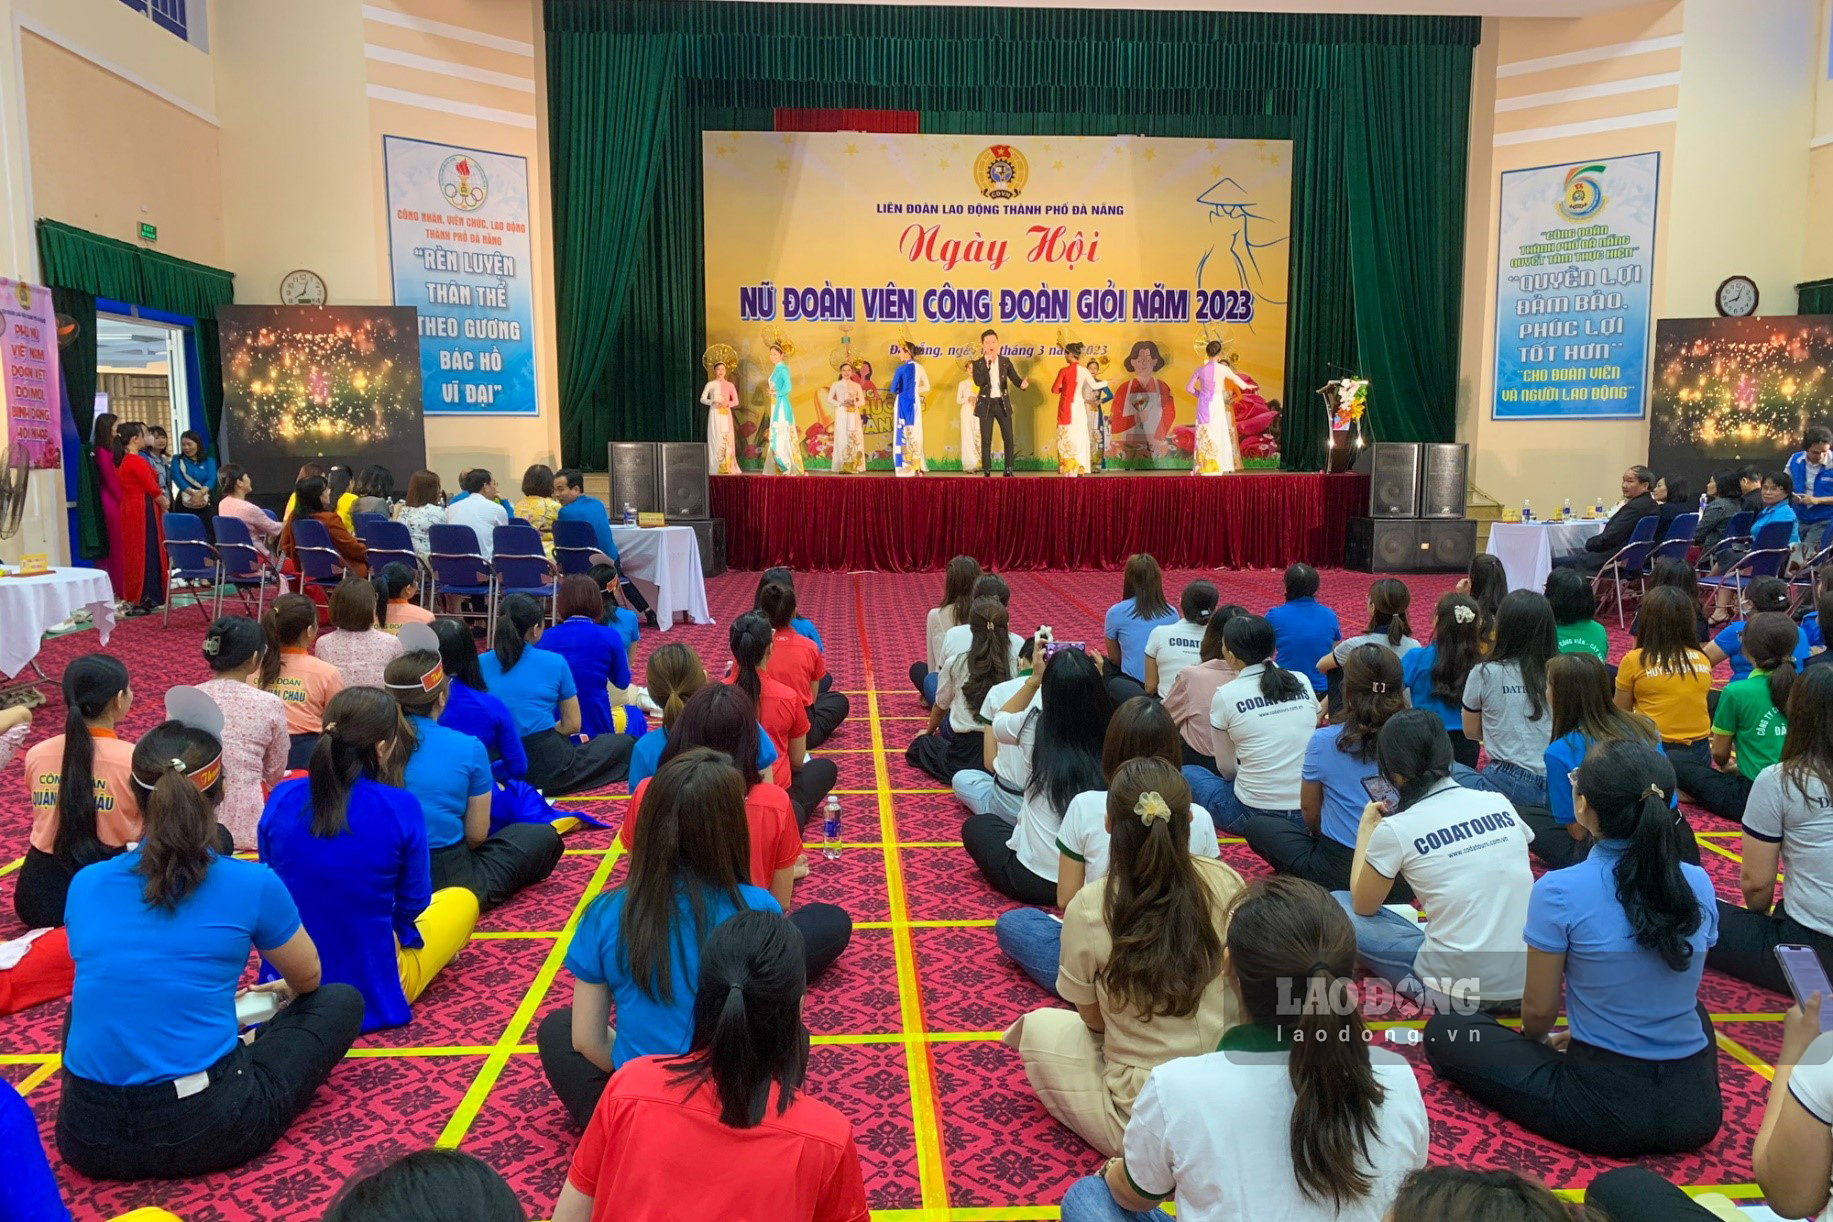 Ngày hội “Nữ đoàn viên Công đoàn giỏi” năm 2023 thu hút sự tham gia của 20 đội thi với 160 nữ đoàn viên đến từ các Công đoàn ngành, Công đoàn cơ sở,..trên địa bàn thành phố Đà Nẵng.